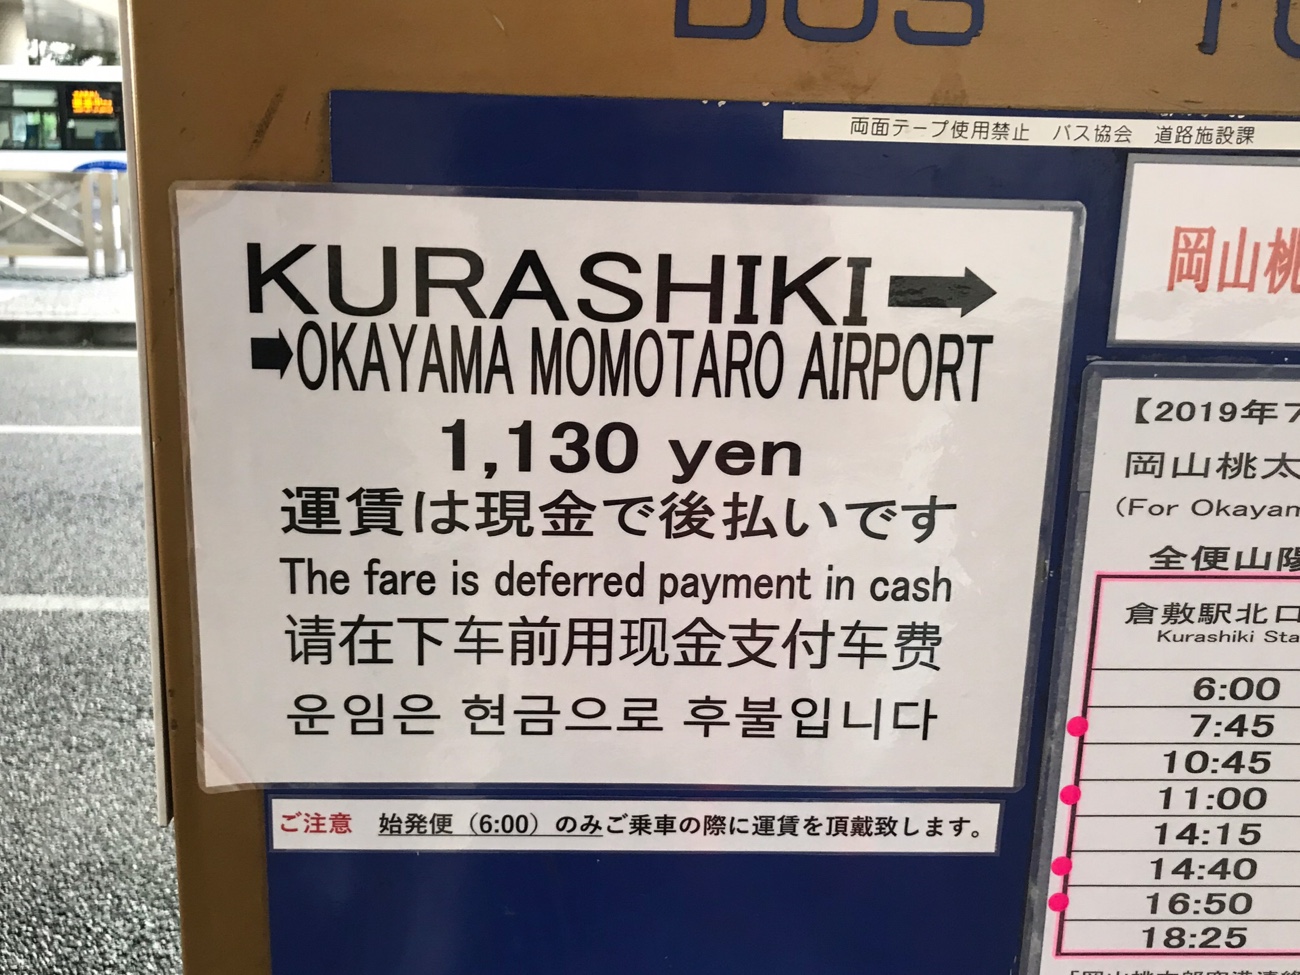 岡山空港から倉敷への行き方 リムジンバス 支払い方法に要注意 倉敷旅行 節約プレミアムな旅行ブログ